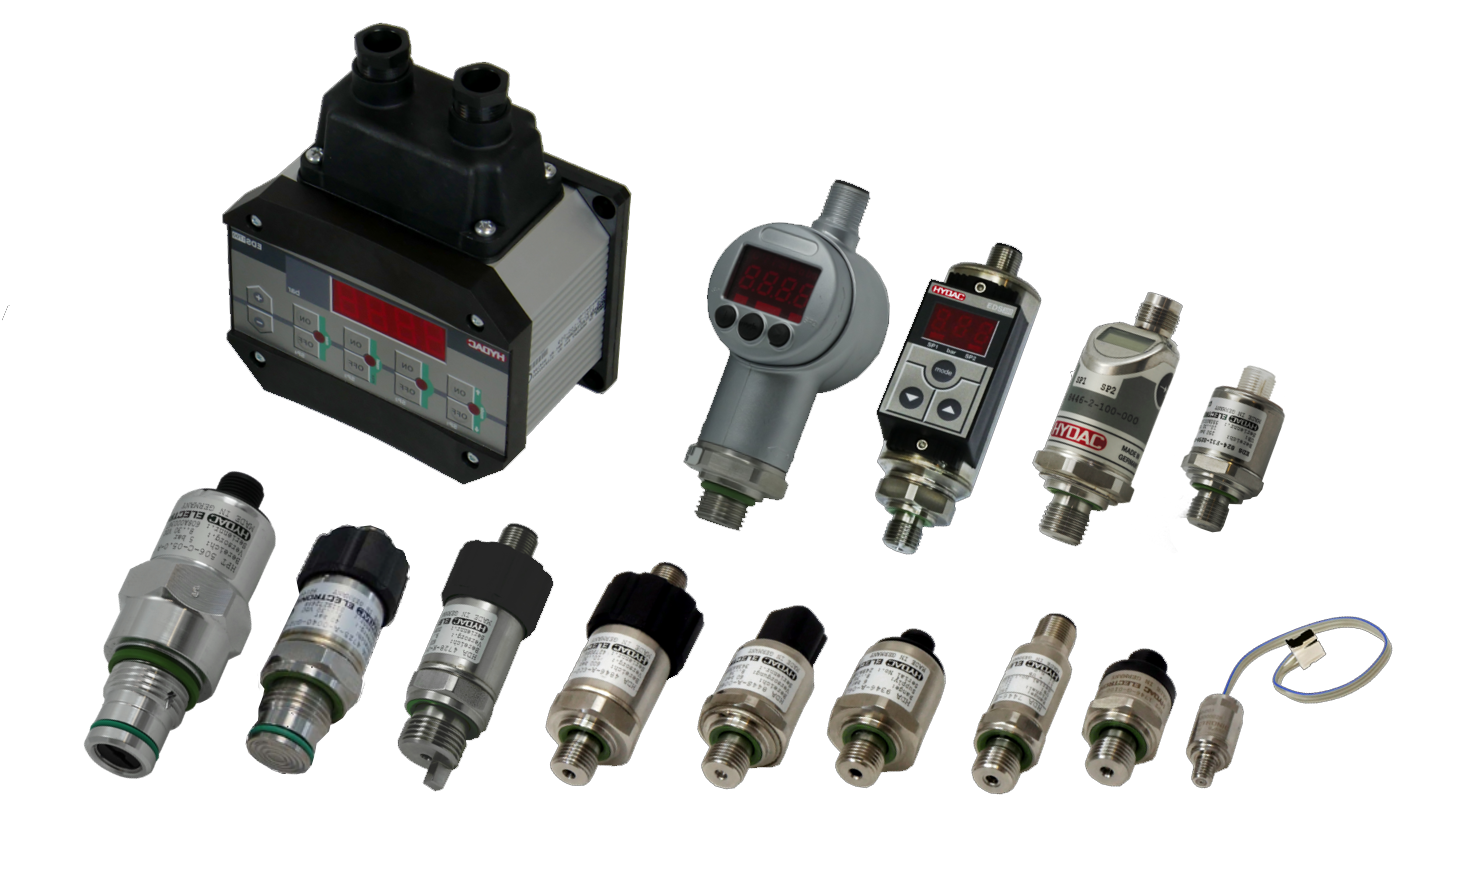 Sensores presión neumáticos., Componentes eléctricos y electrónicos